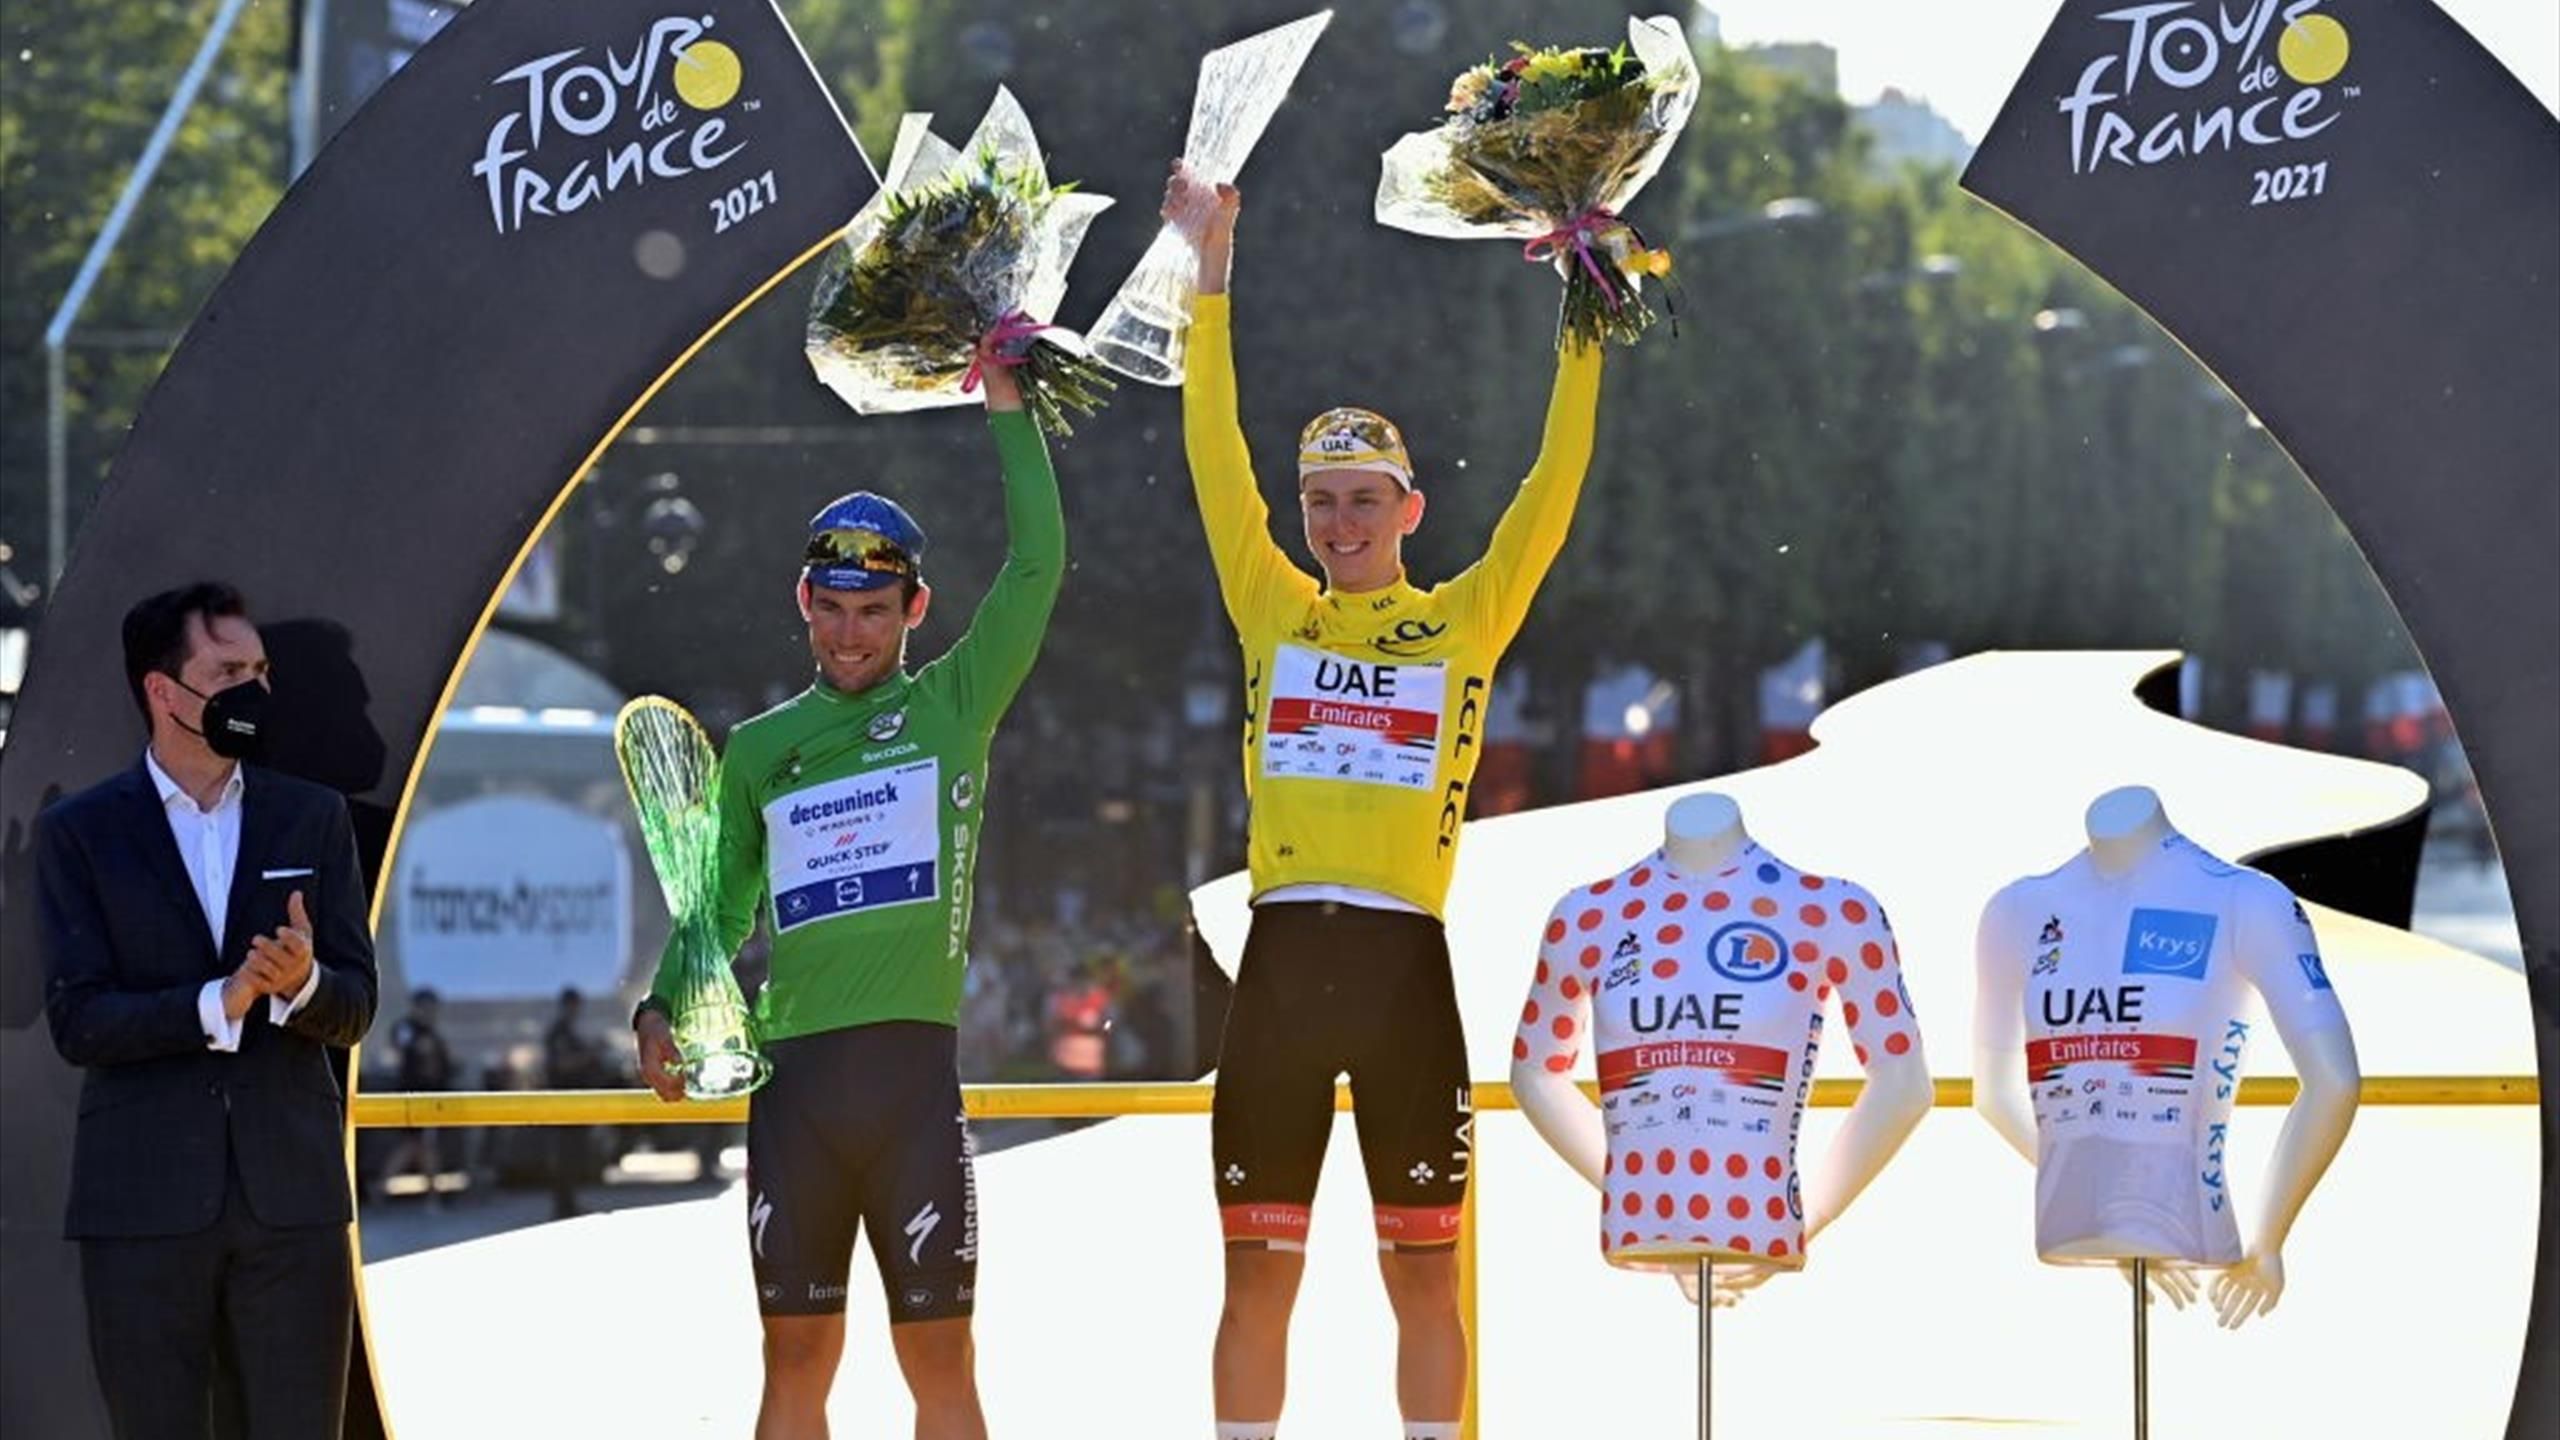 Franco interfaz Roble Tour de Francia 2022 | El maillot amarillo y los de lunares, verde y  blanco: ¿Qué premia cada uno y cómo se ganan? - Eurosport